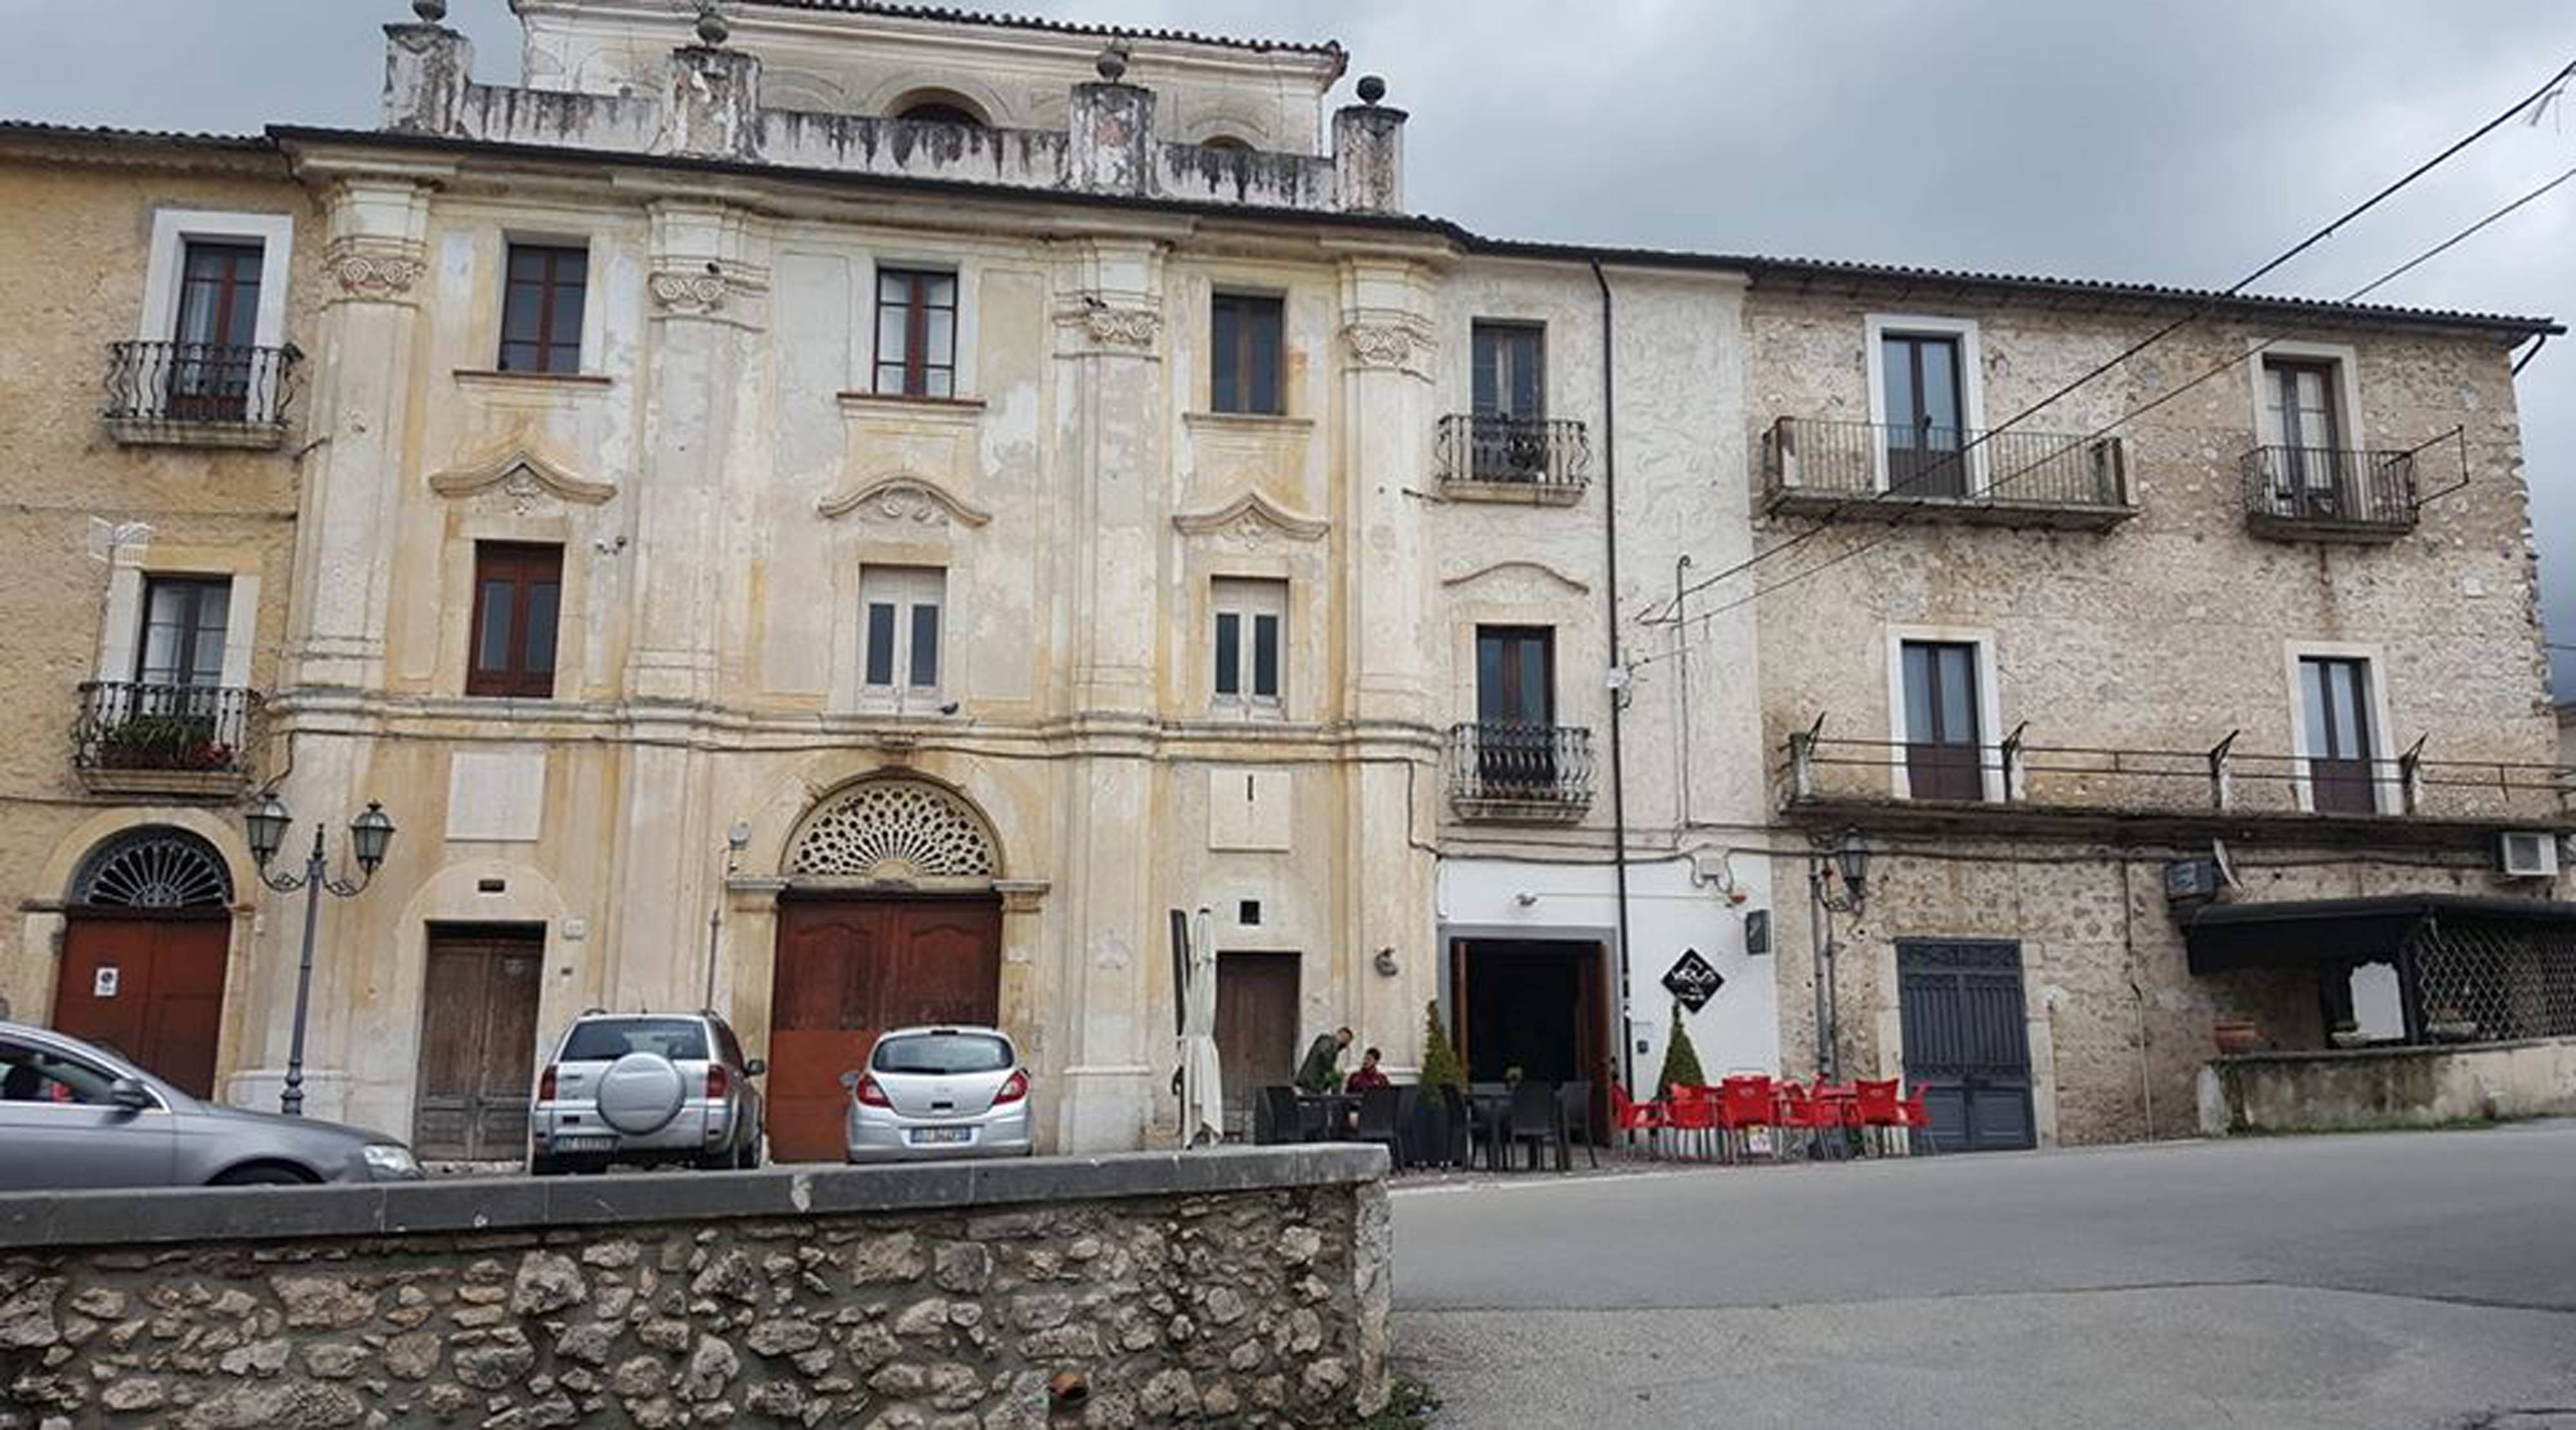 Palazzo Campochiaro (palazzo, signorile) - San Potito Sannitico (CE) 